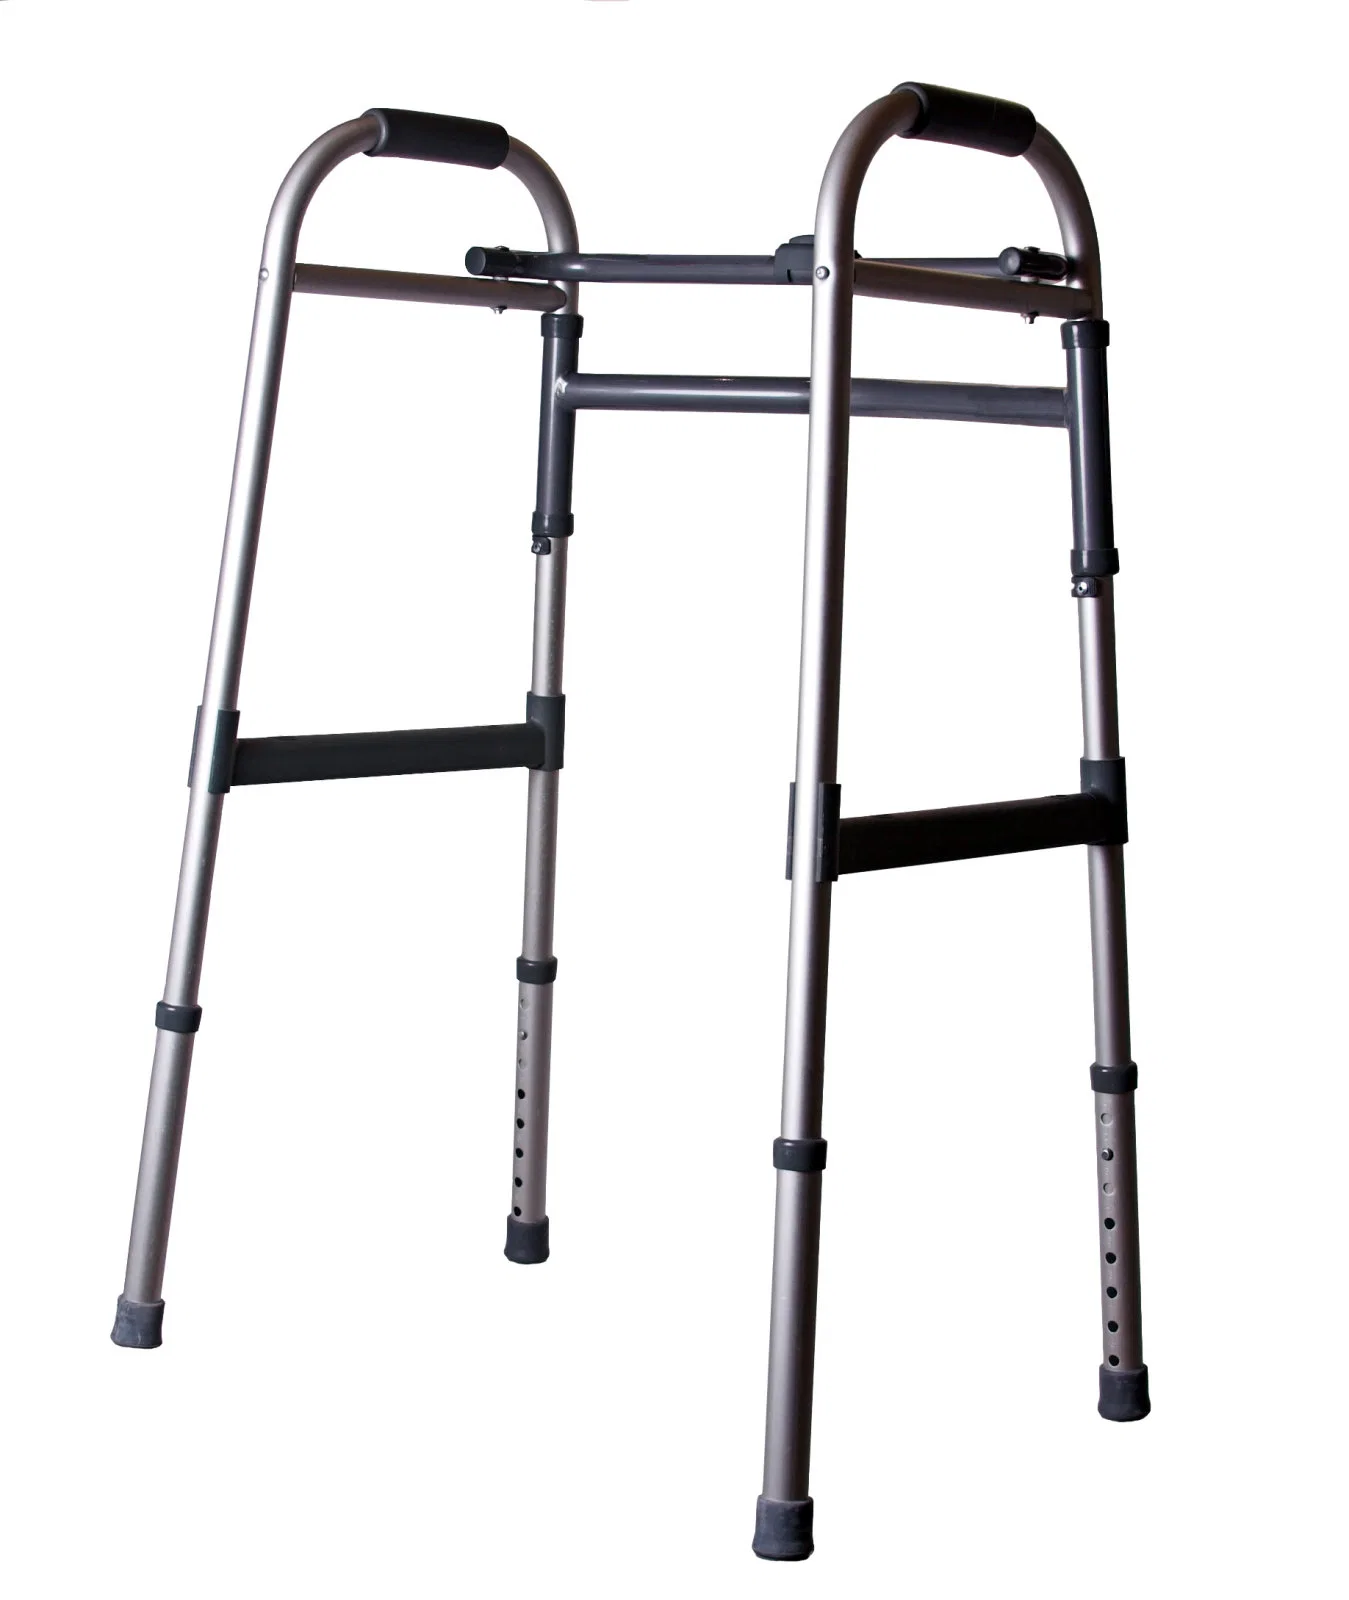 Многофункциональная алюминиевая тележка Walker кресло-коляска Walker Shopping Cart